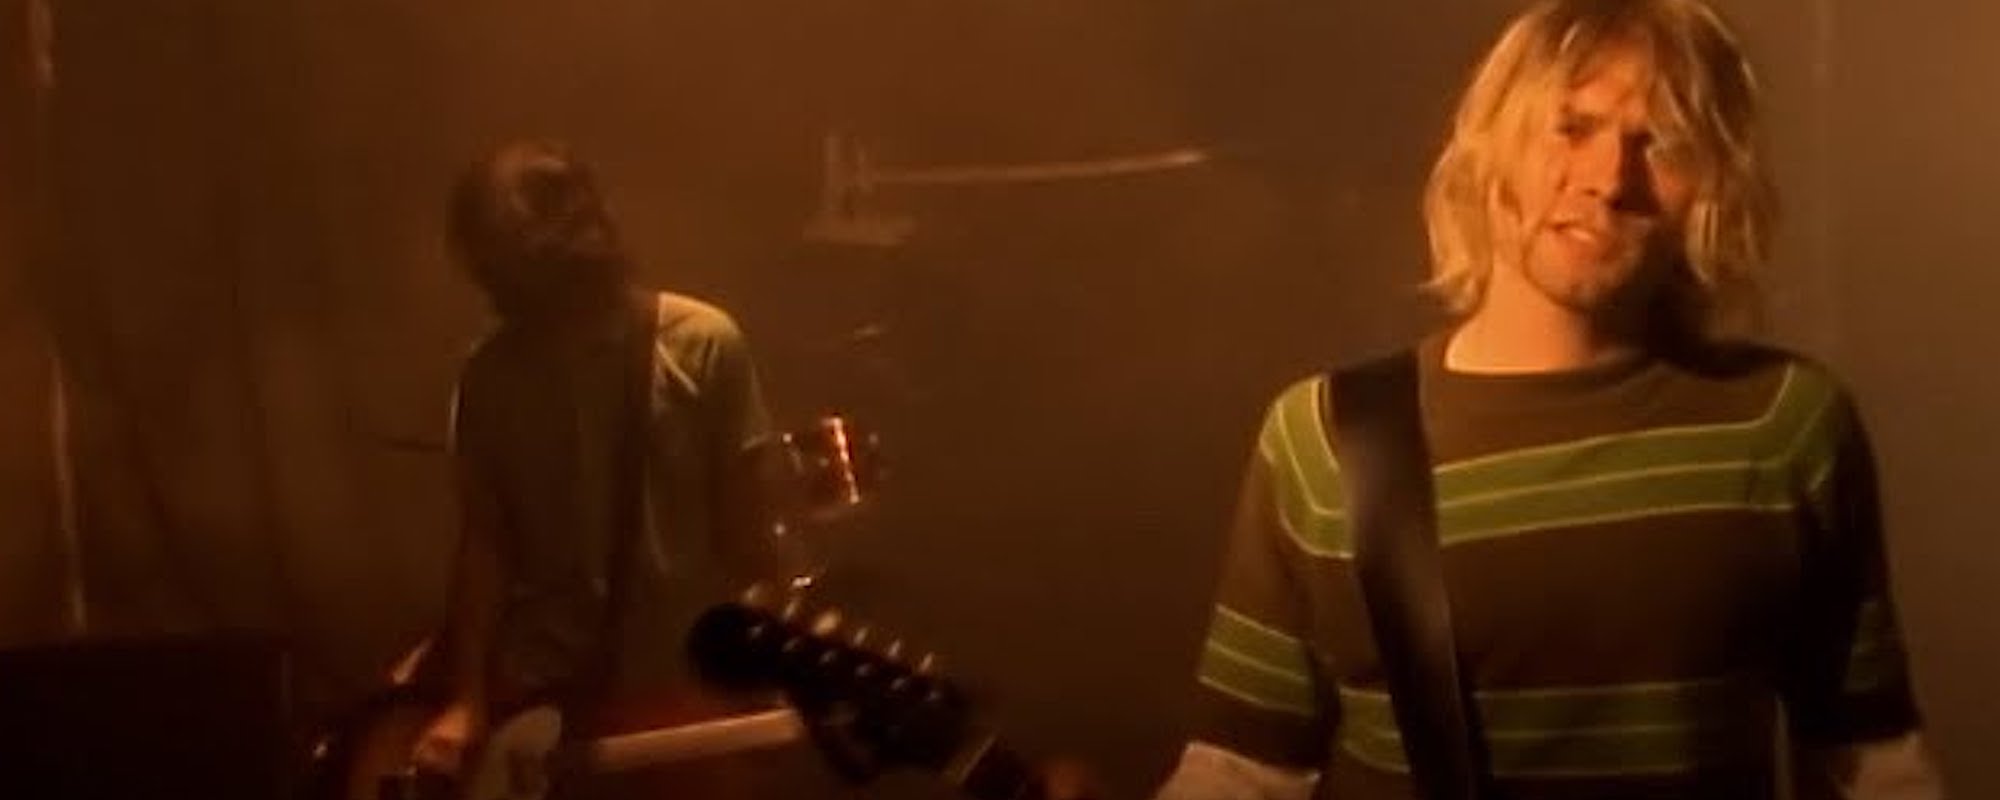 Kurt Cobain’s “Smells Like Teen Spirit” Fender Guitar Sells for $4.5 Million at Auction